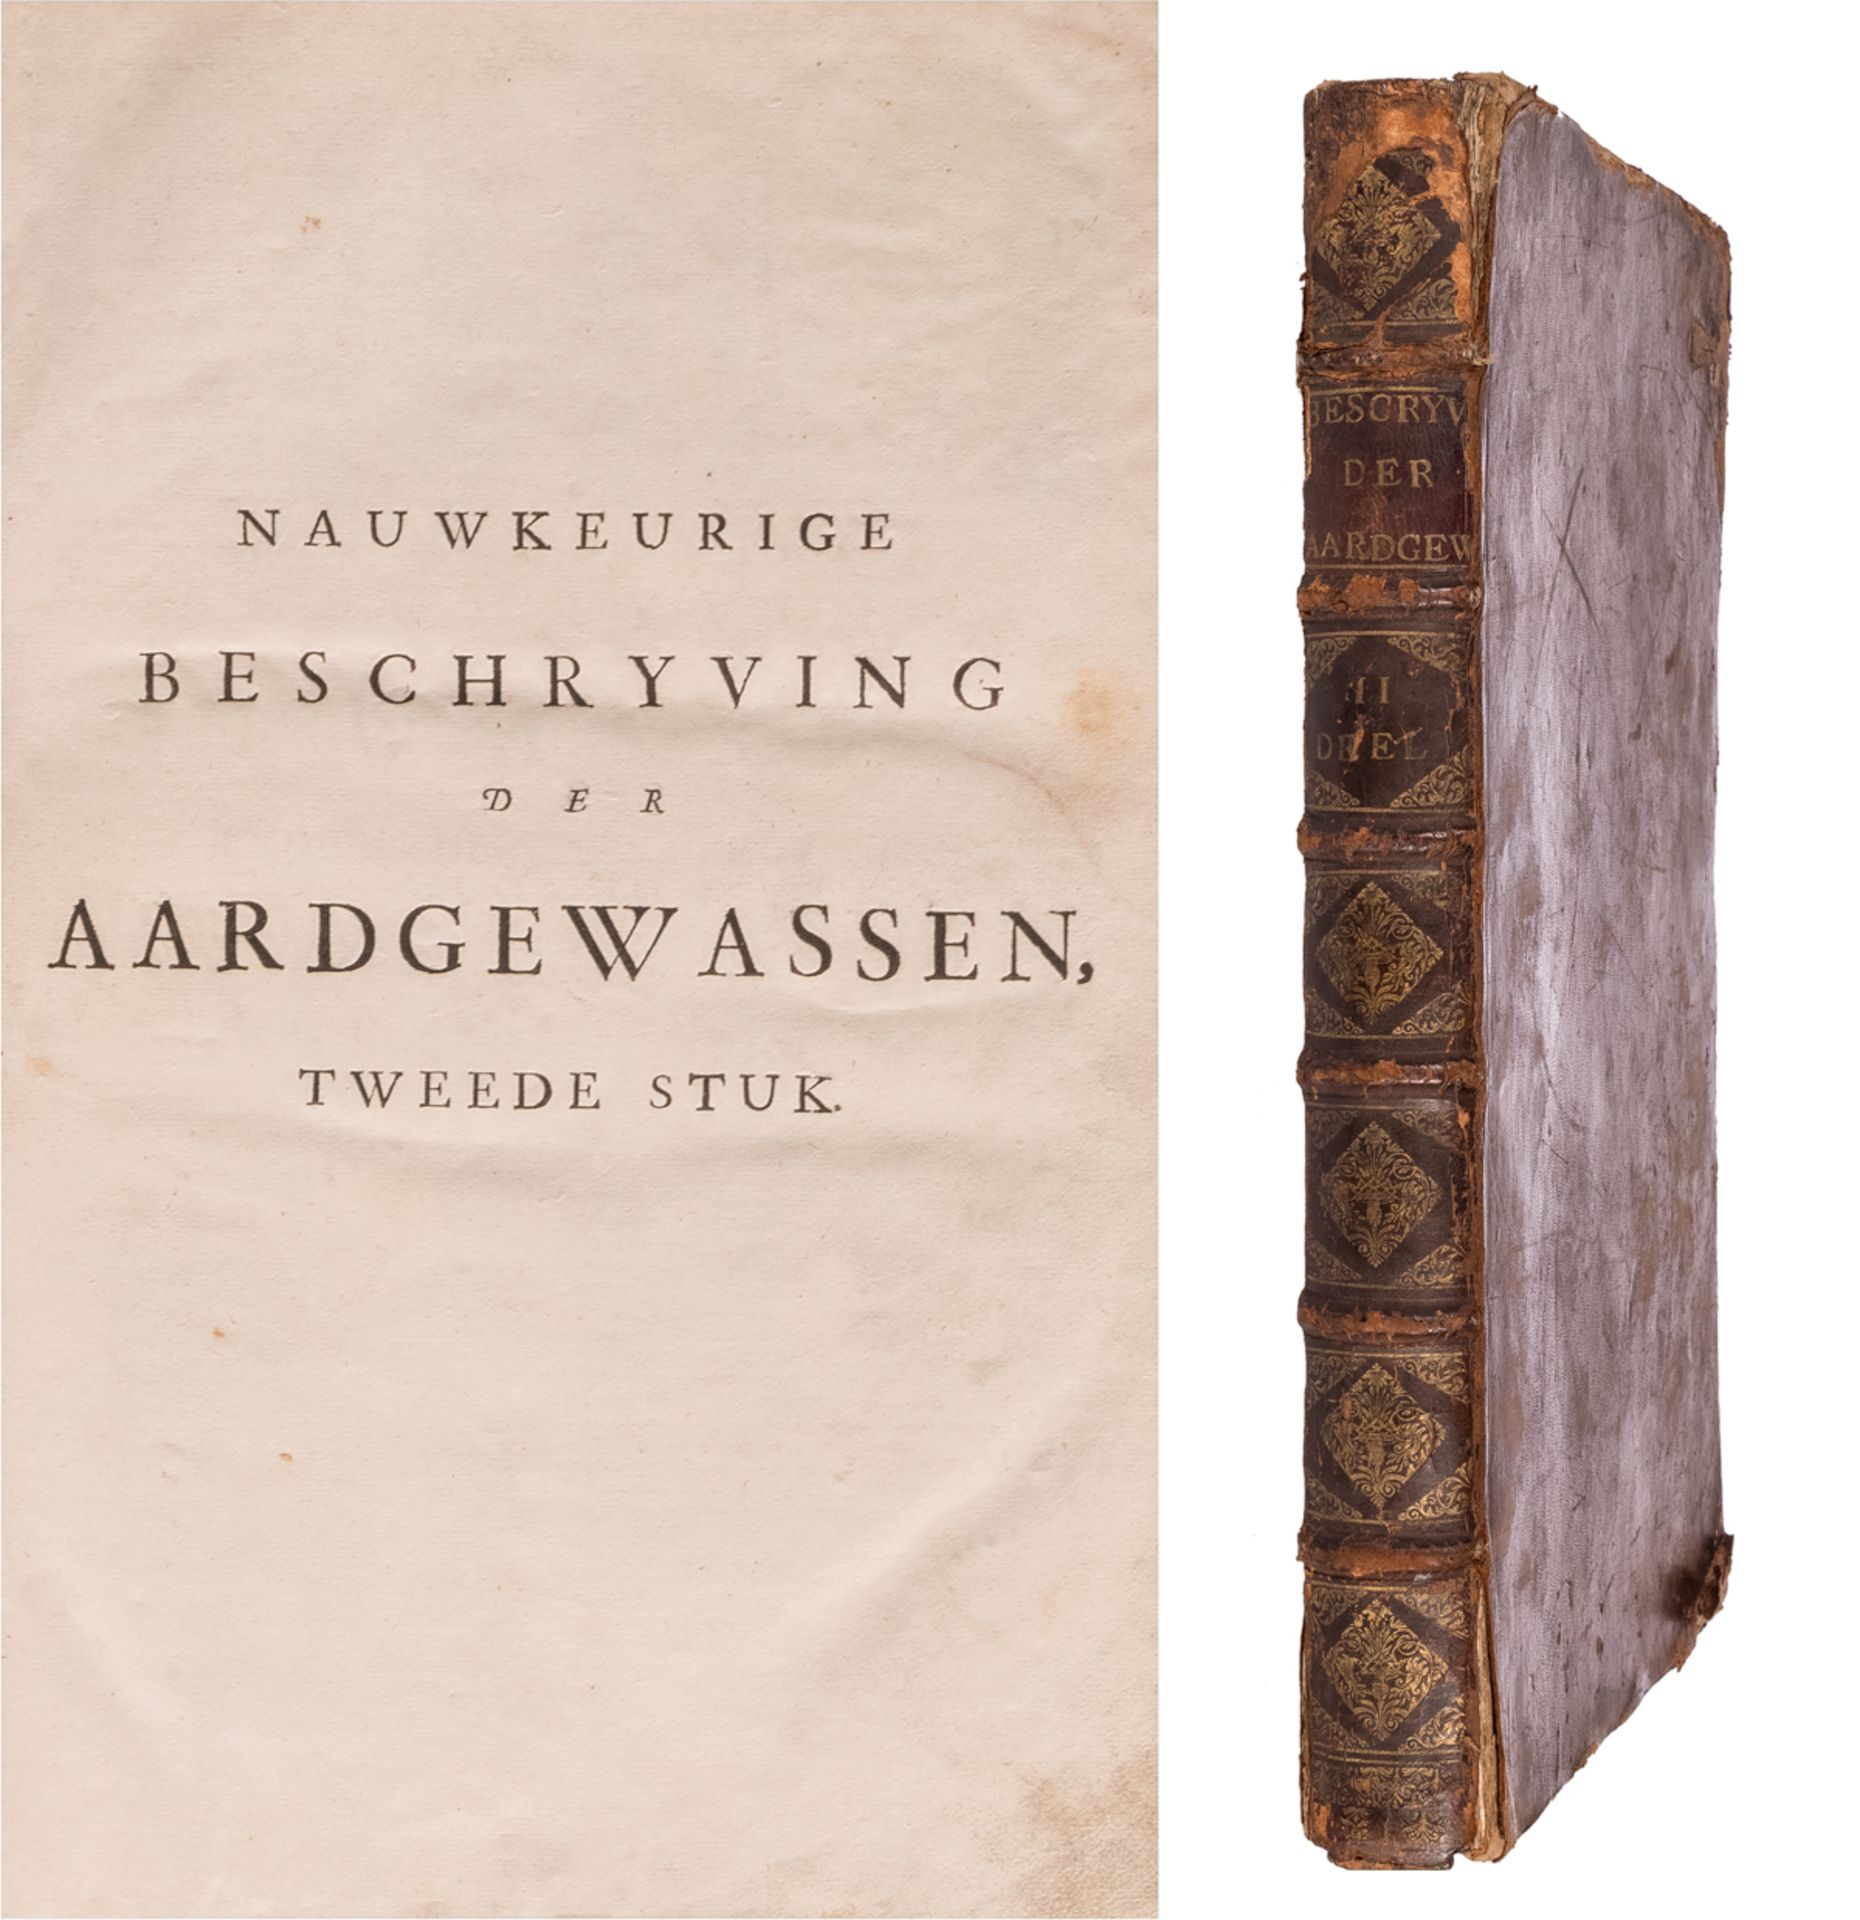 Munting A., 'Nauwkeurige beschryving der aardgewassen - Tweede stuk', Leiden, printed by François Ha